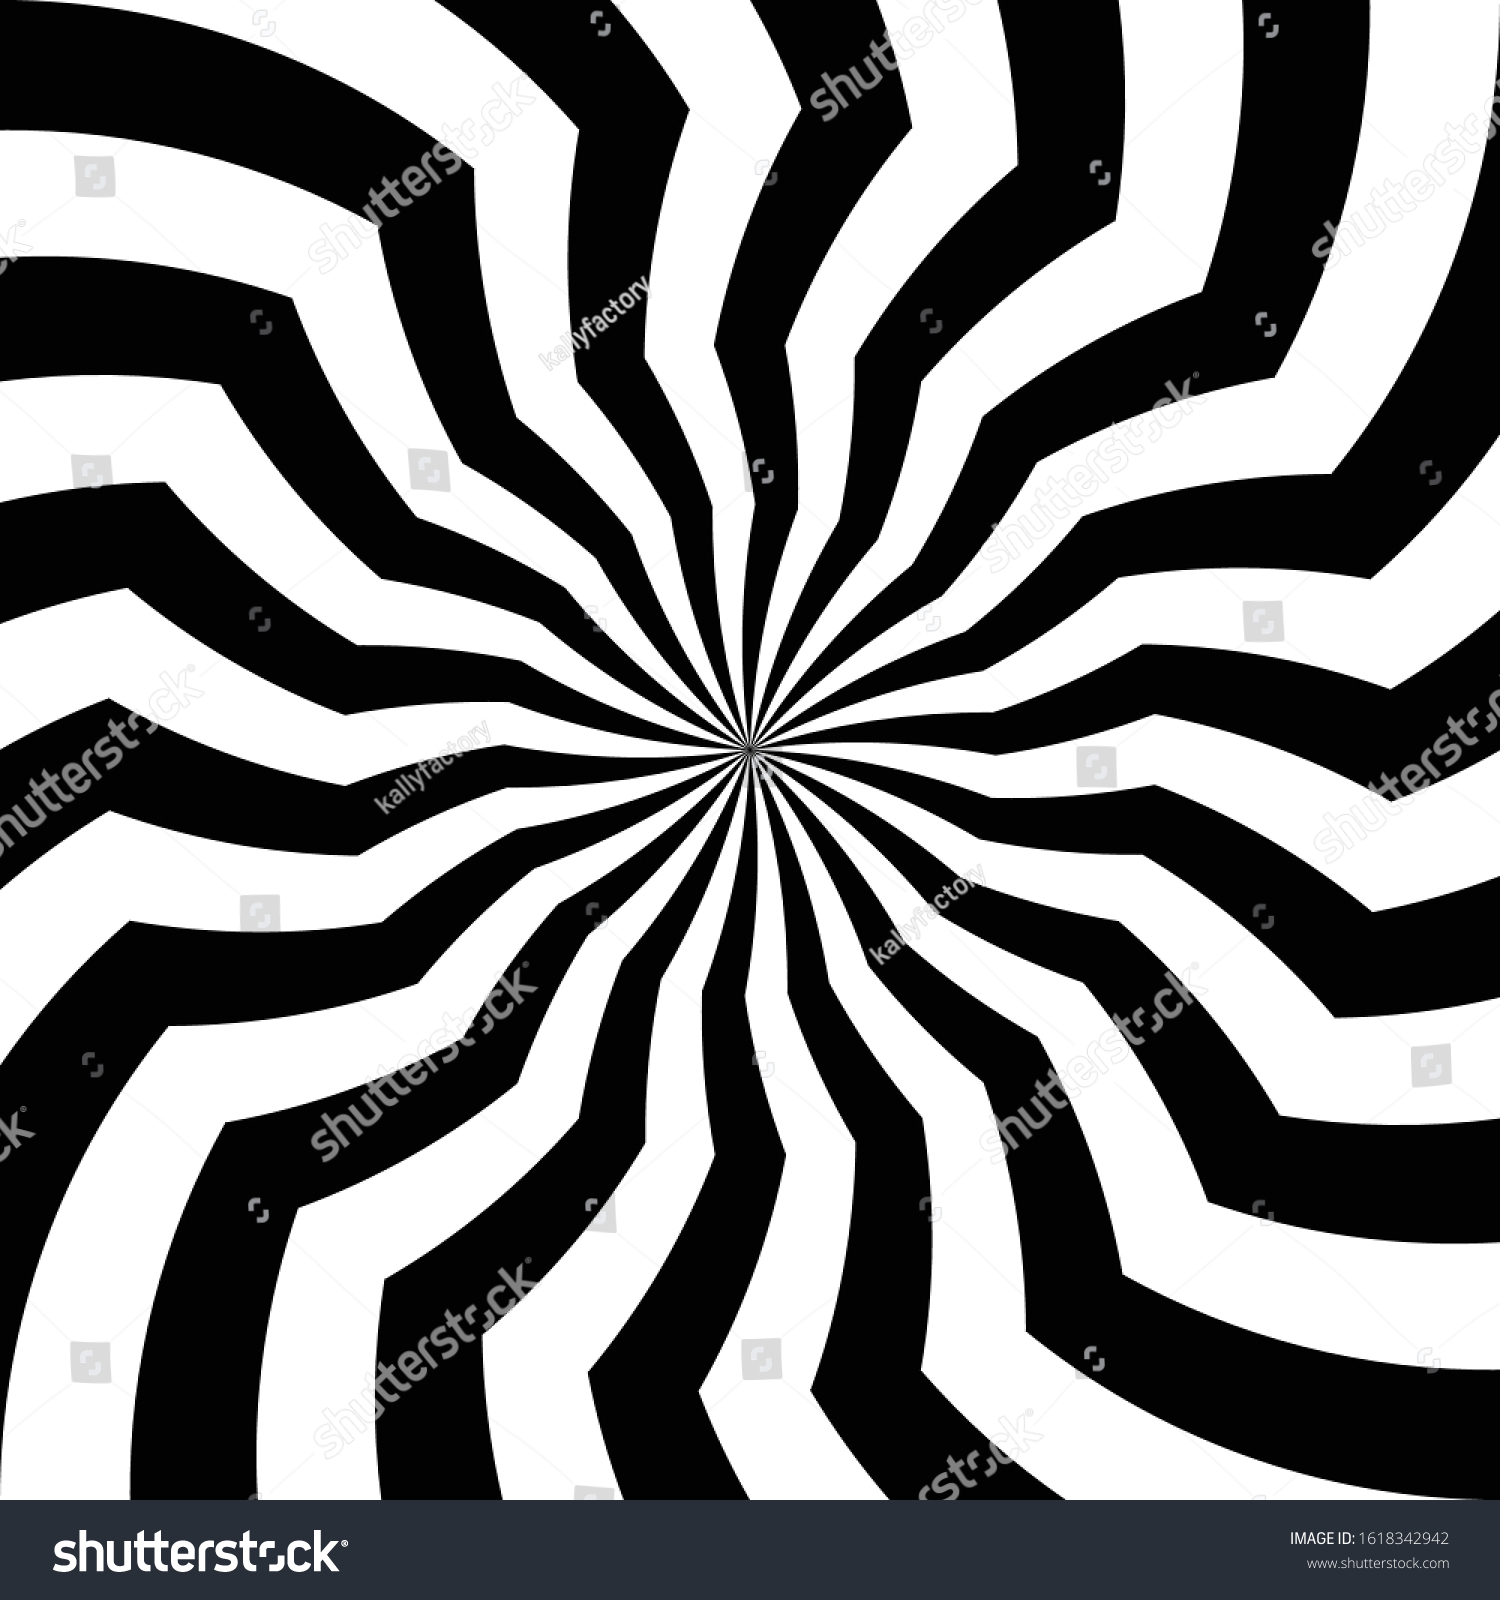 抽象的な壁紙 目の錯覚 歪んだ線の背景 簡単なベクター画像デザイン 白黒の縞模様の背景 旋回 旋回エレメント サイケデリック催眠術プリントポスター のベクター画像素材 ロイヤリティフリー